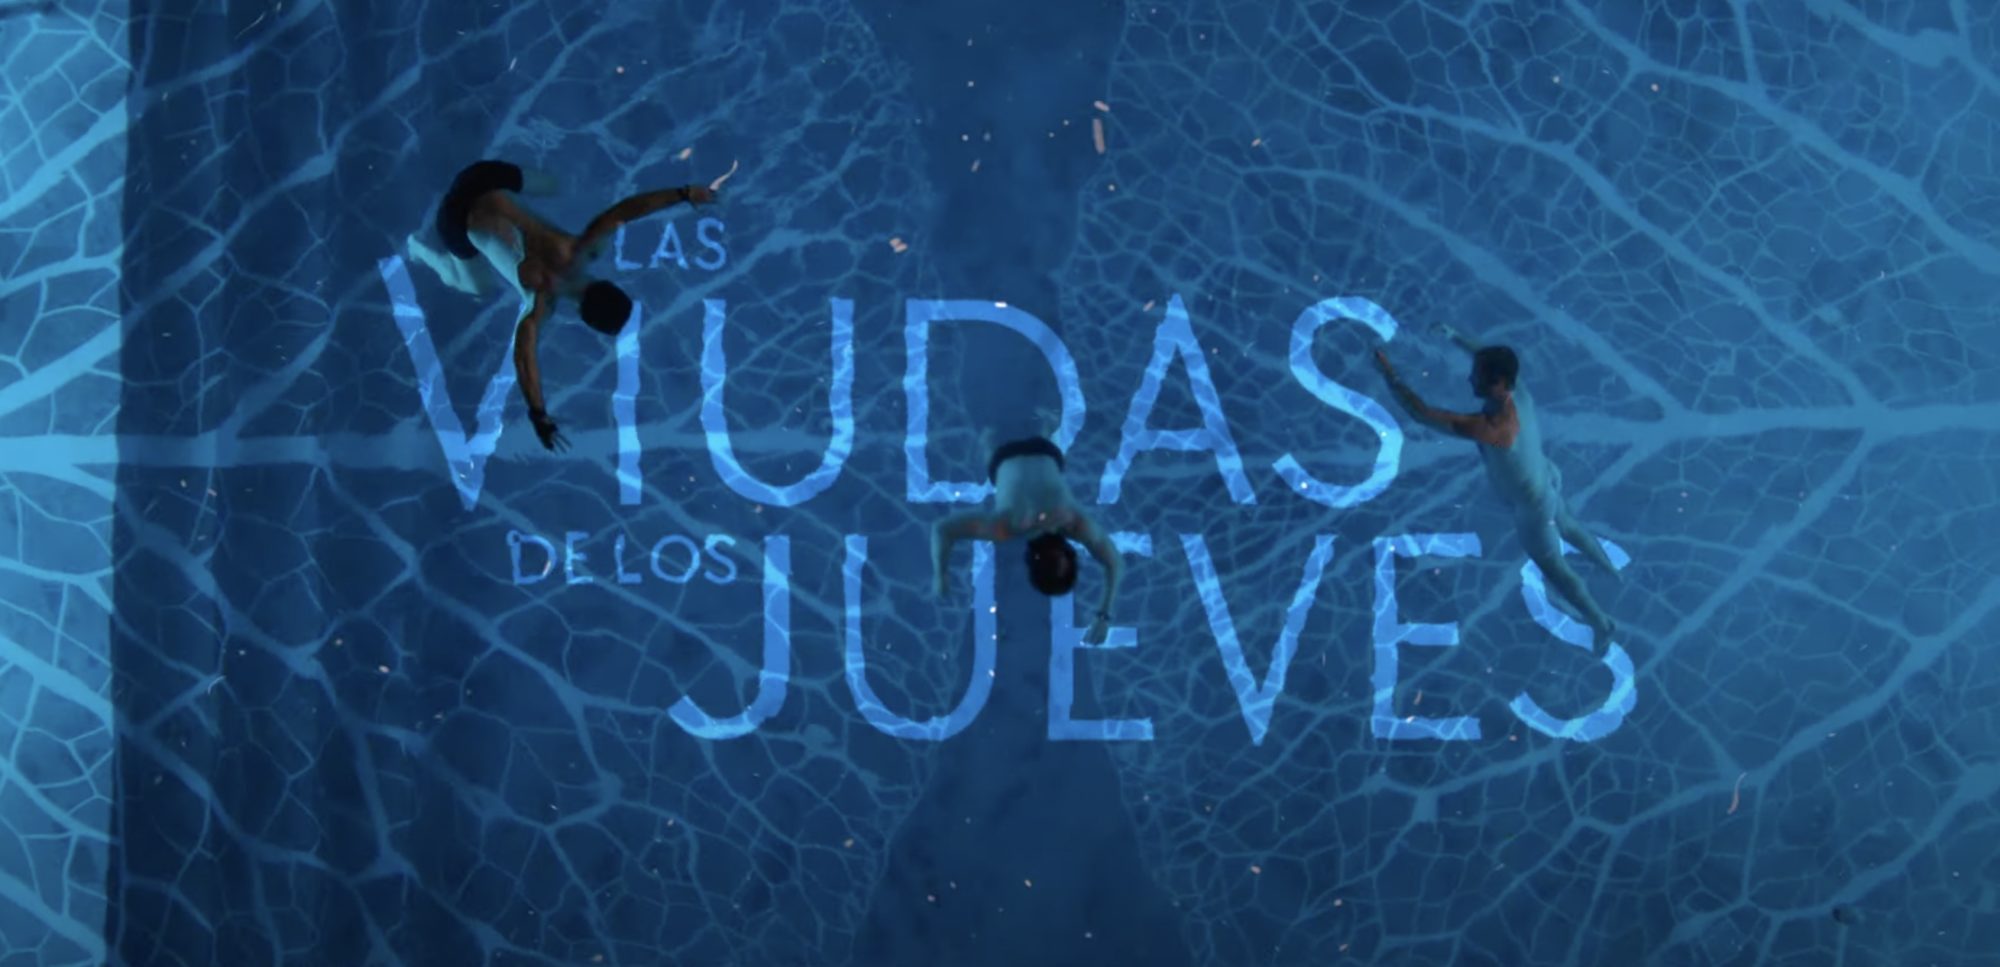 les veuves du jeudi netflix serie - Les Veuves du Jeudi : ce thriller mexicain plein de suspense va vous tenir en haleine en septembre sur Netflix